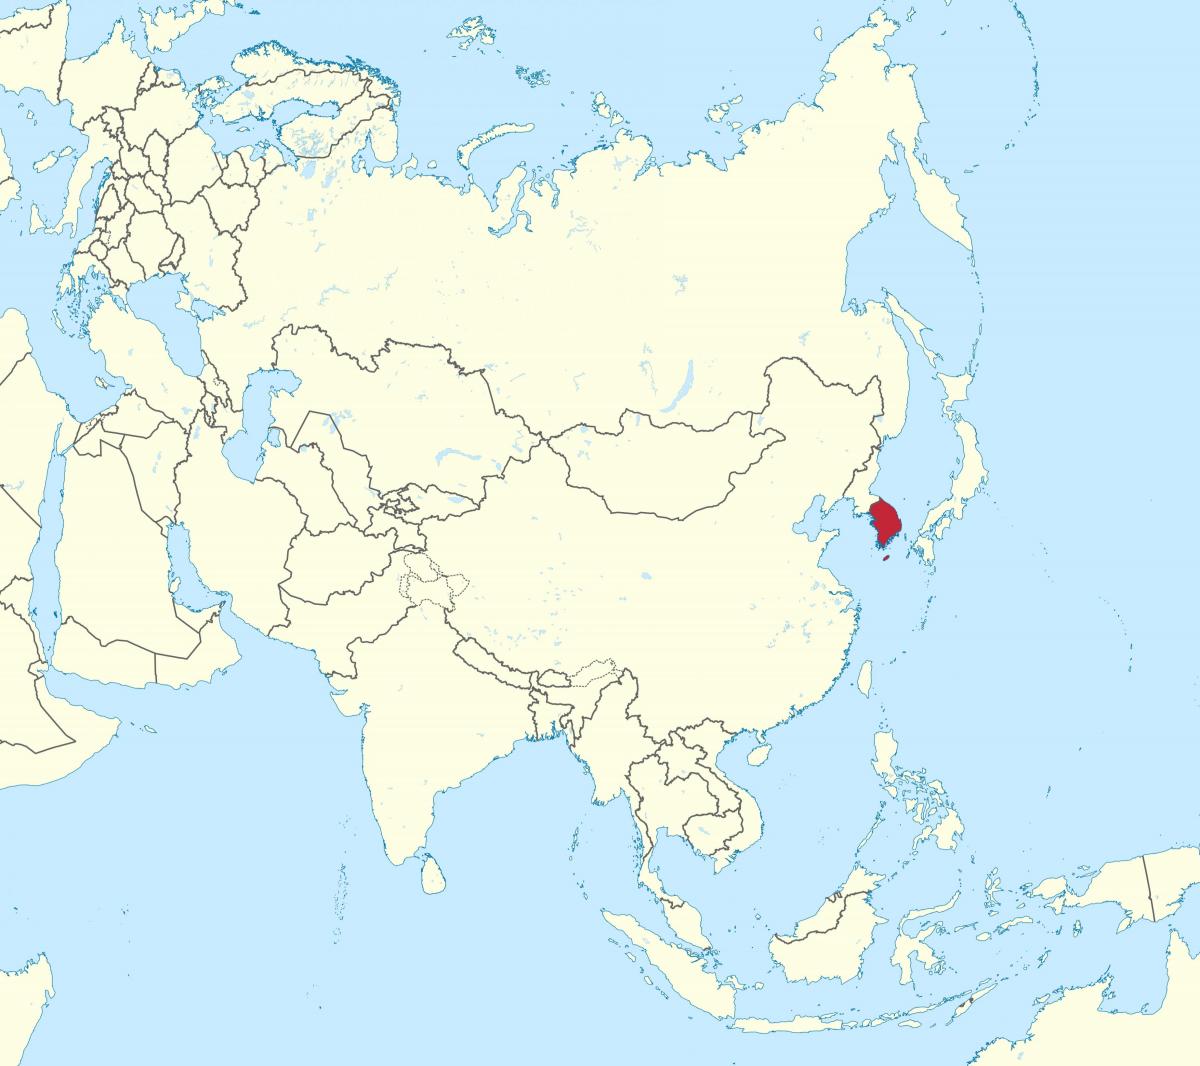 Ubicación de Corea del Sur (ROK) en el mapa de Asia